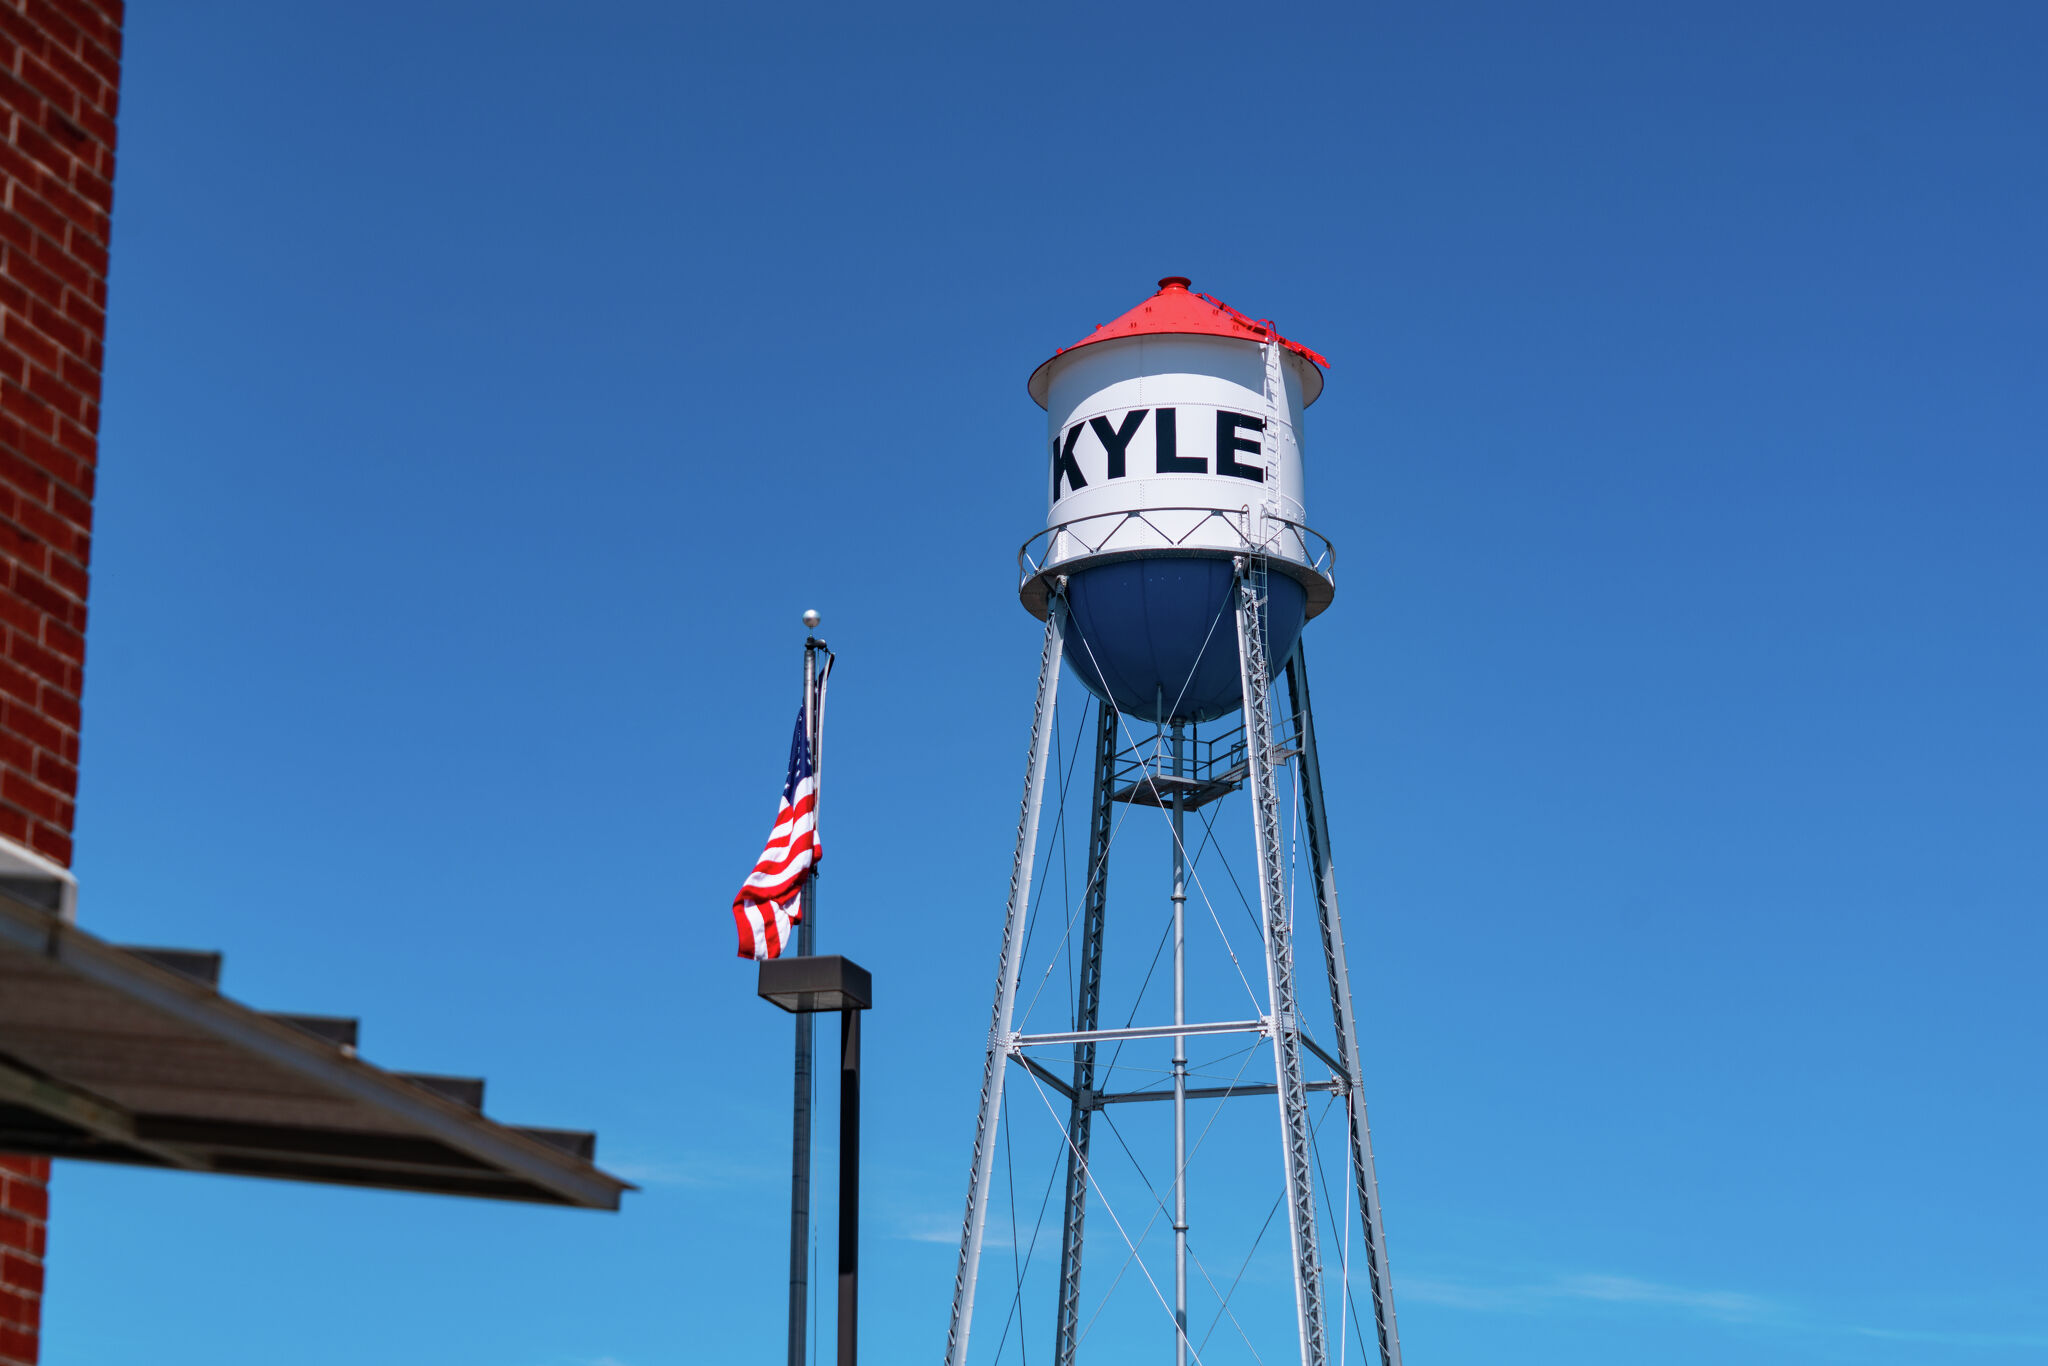 Kyle市议会考虑建设45英亩的零售开发项目